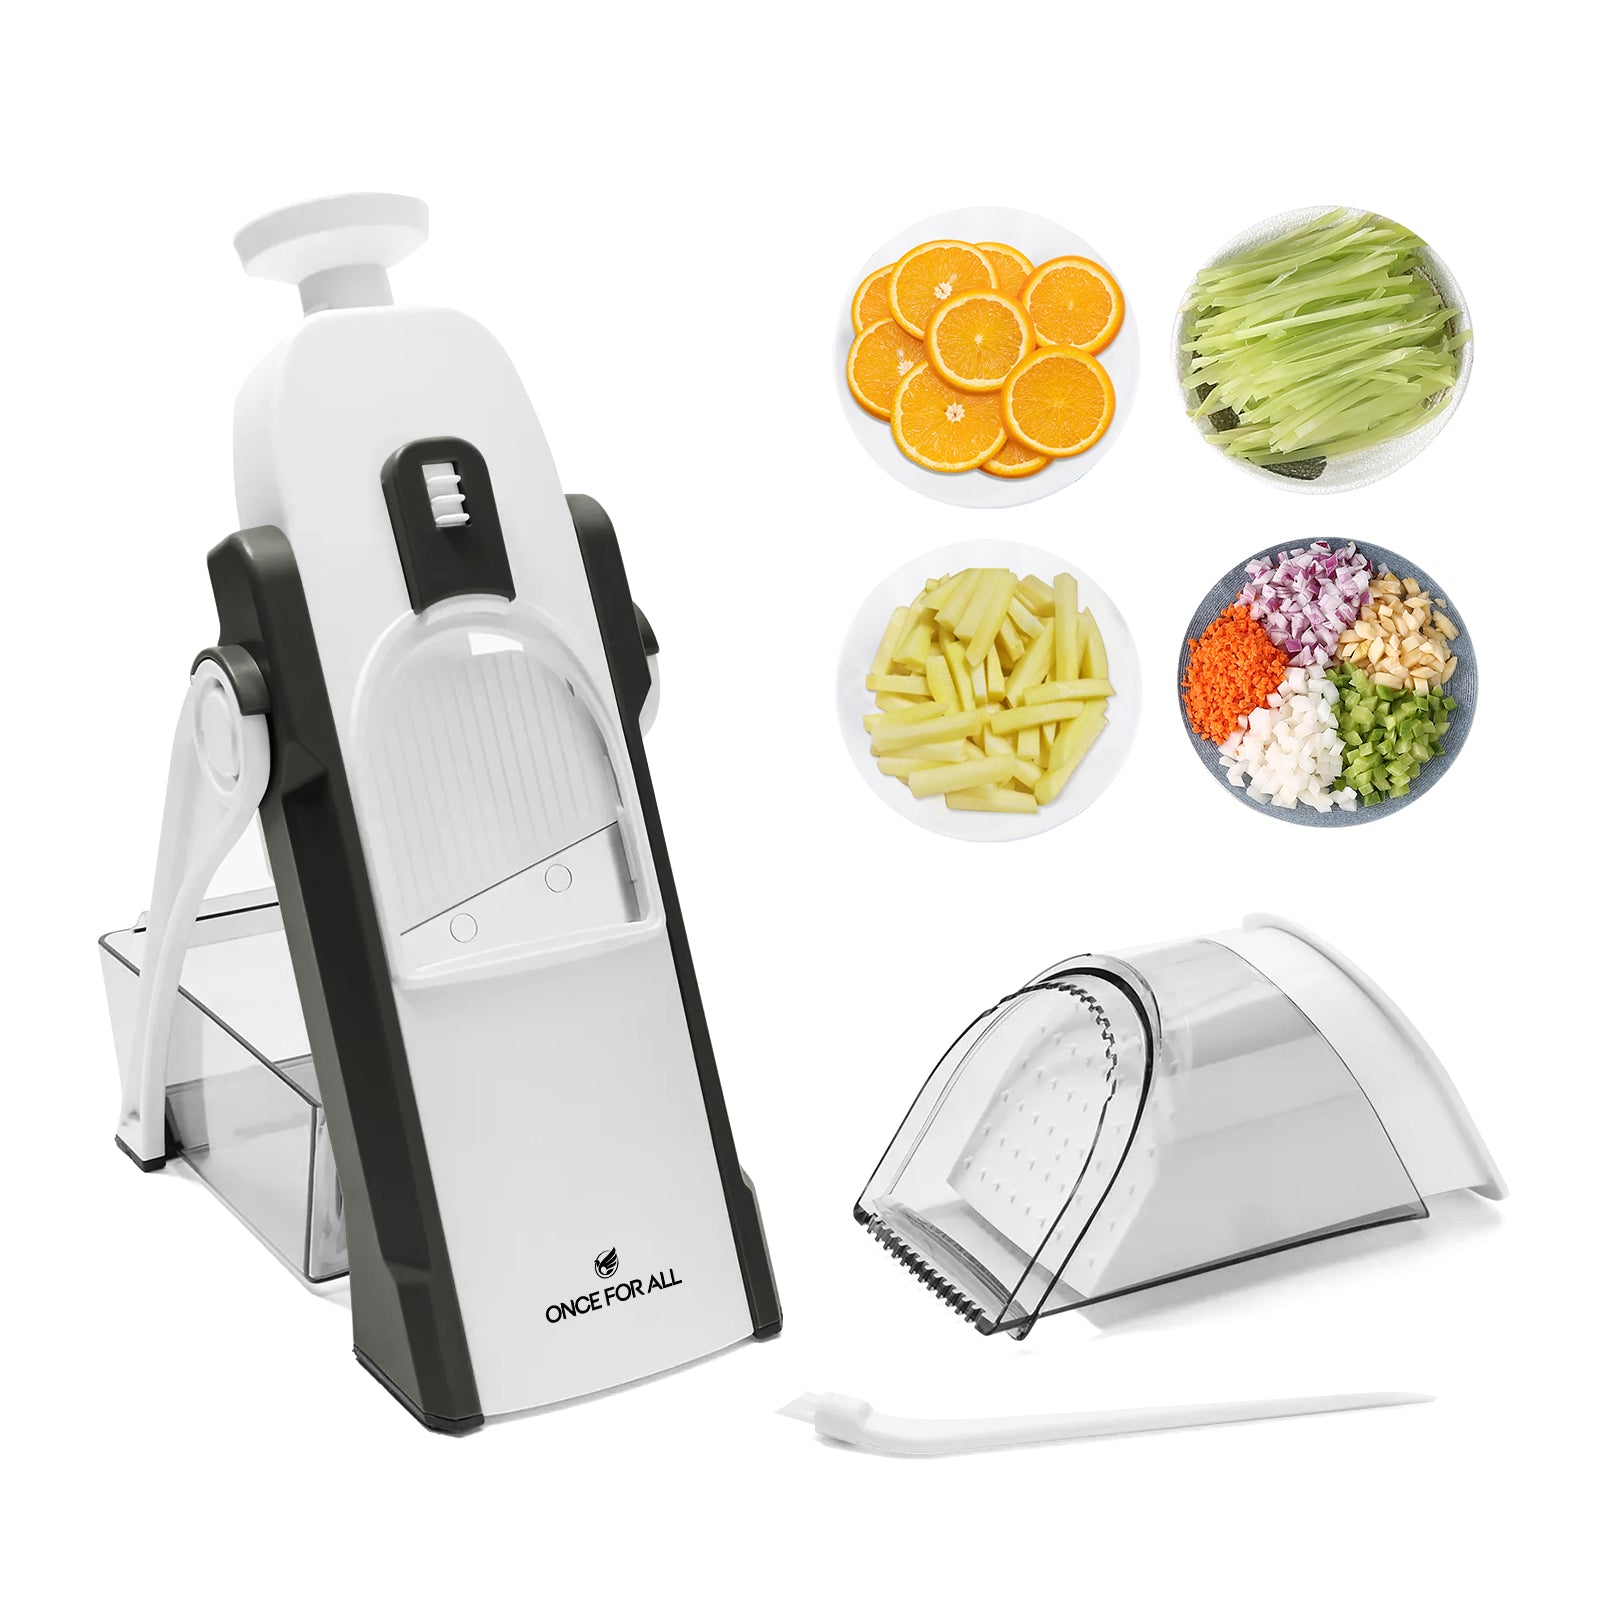 Adjustable Mandoline Slicer Safe Vegetable Slicer Food Chopper